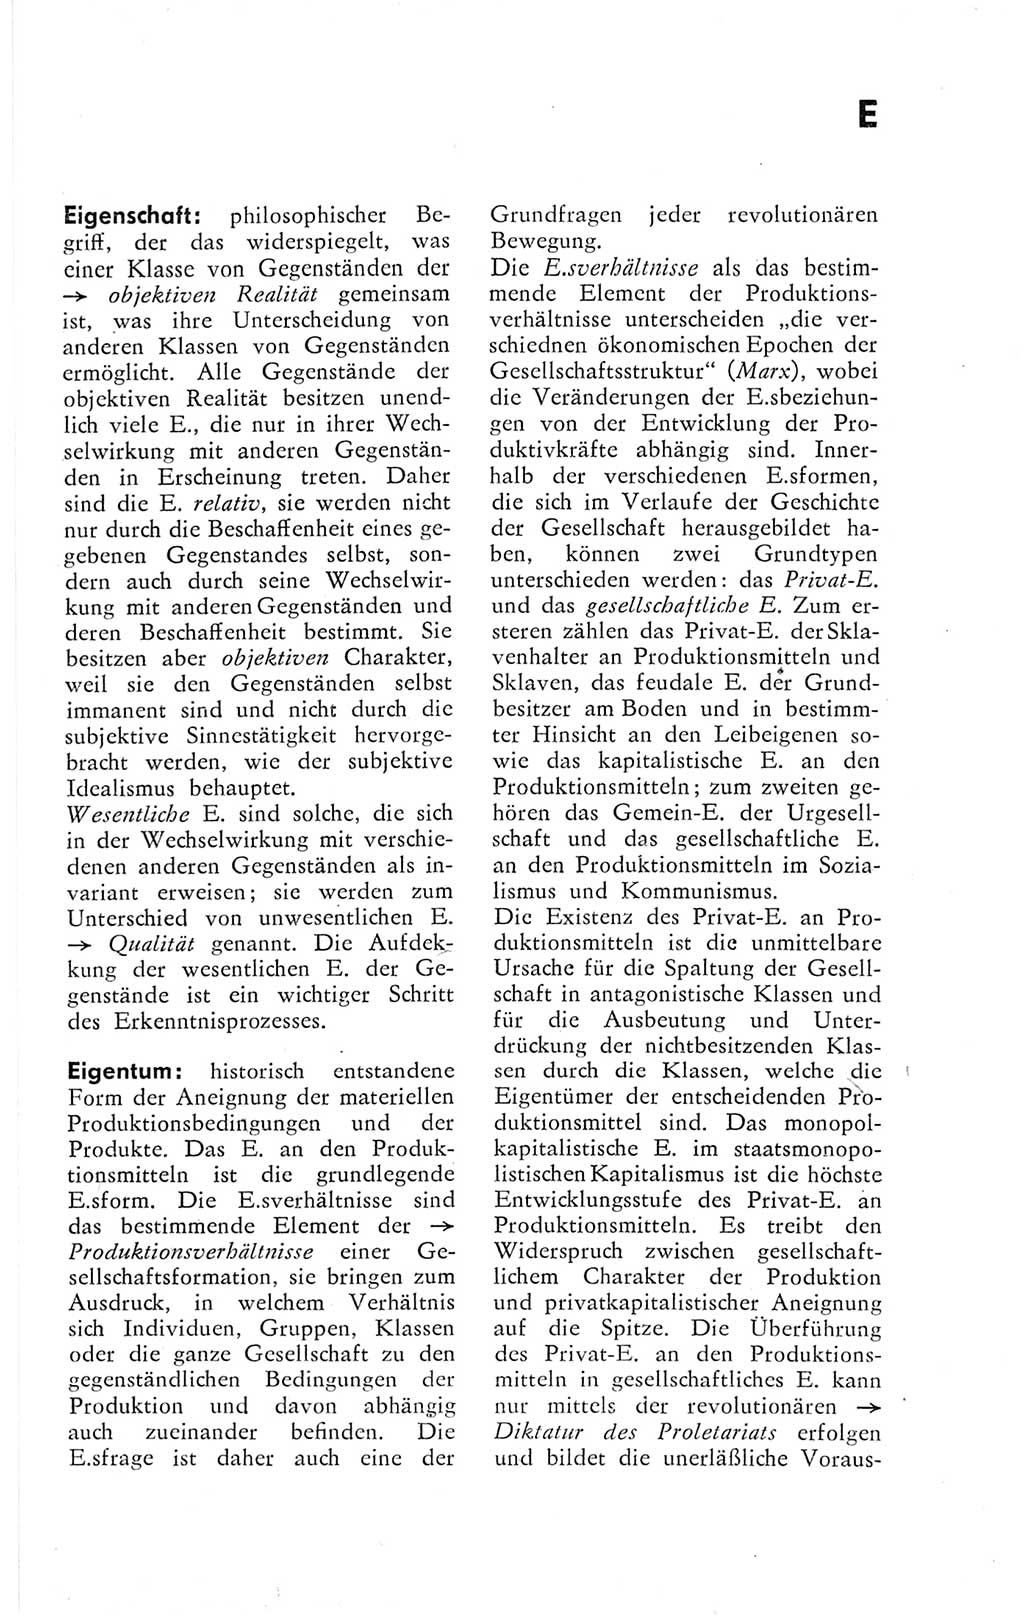 Kleines Wörterbuch der marxistisch-leninistischen Philosophie [Deutsche Demokratische Republik (DDR)] 1974, Seite 73 (Kl. Wb. ML Phil. DDR 1974, S. 73)